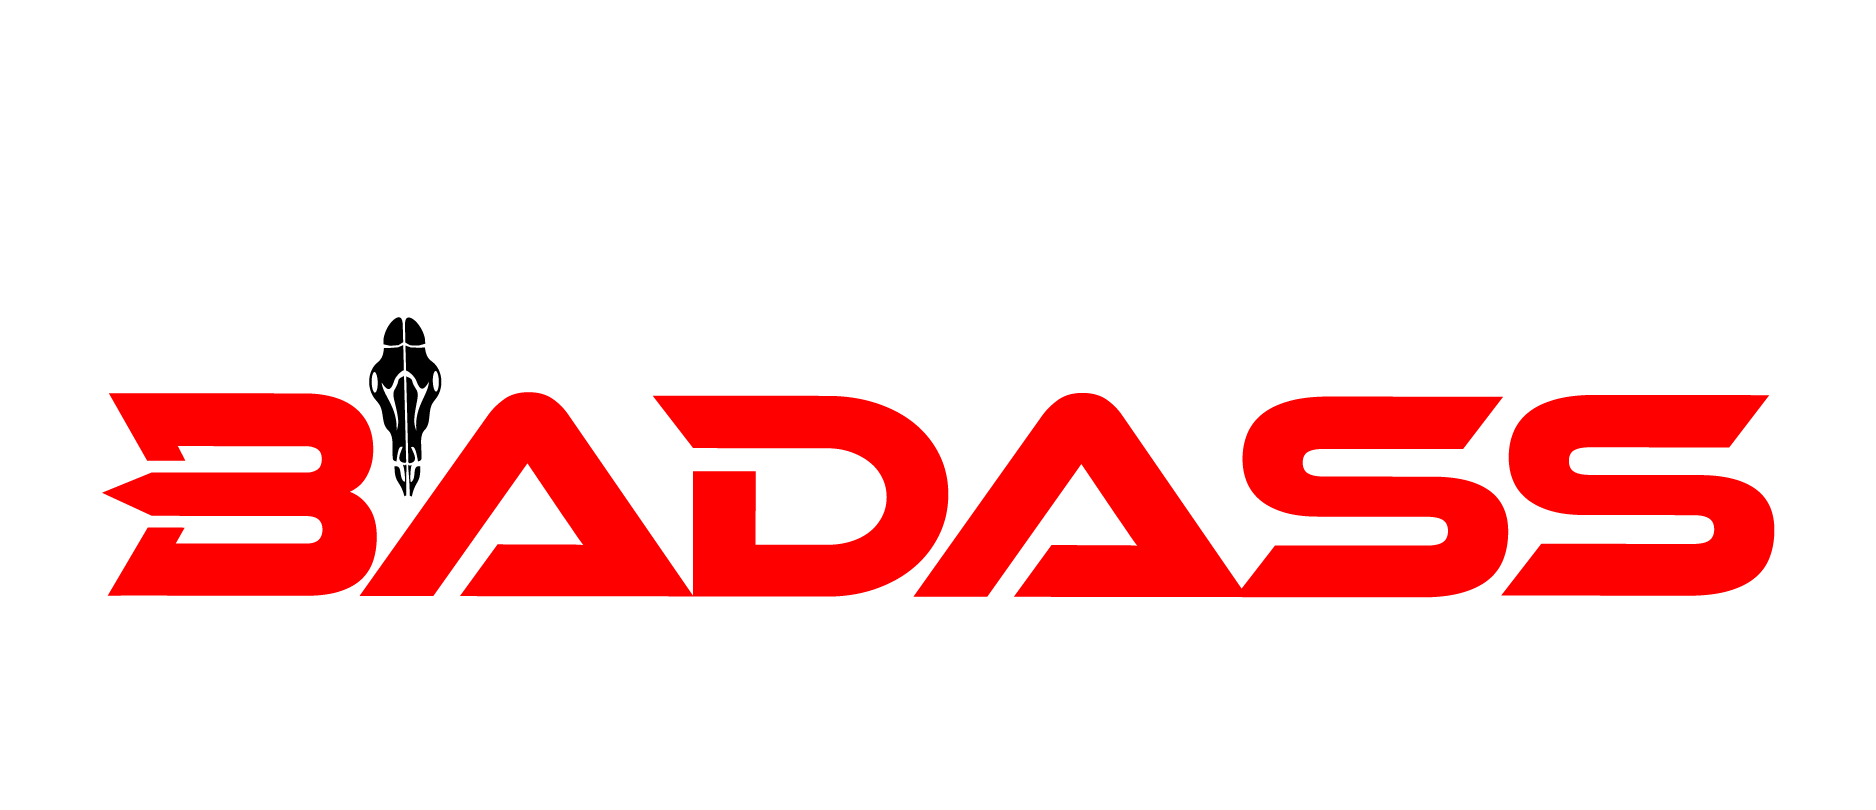 AAE Gripper Double V-Bar – Badass Outdoor Gear